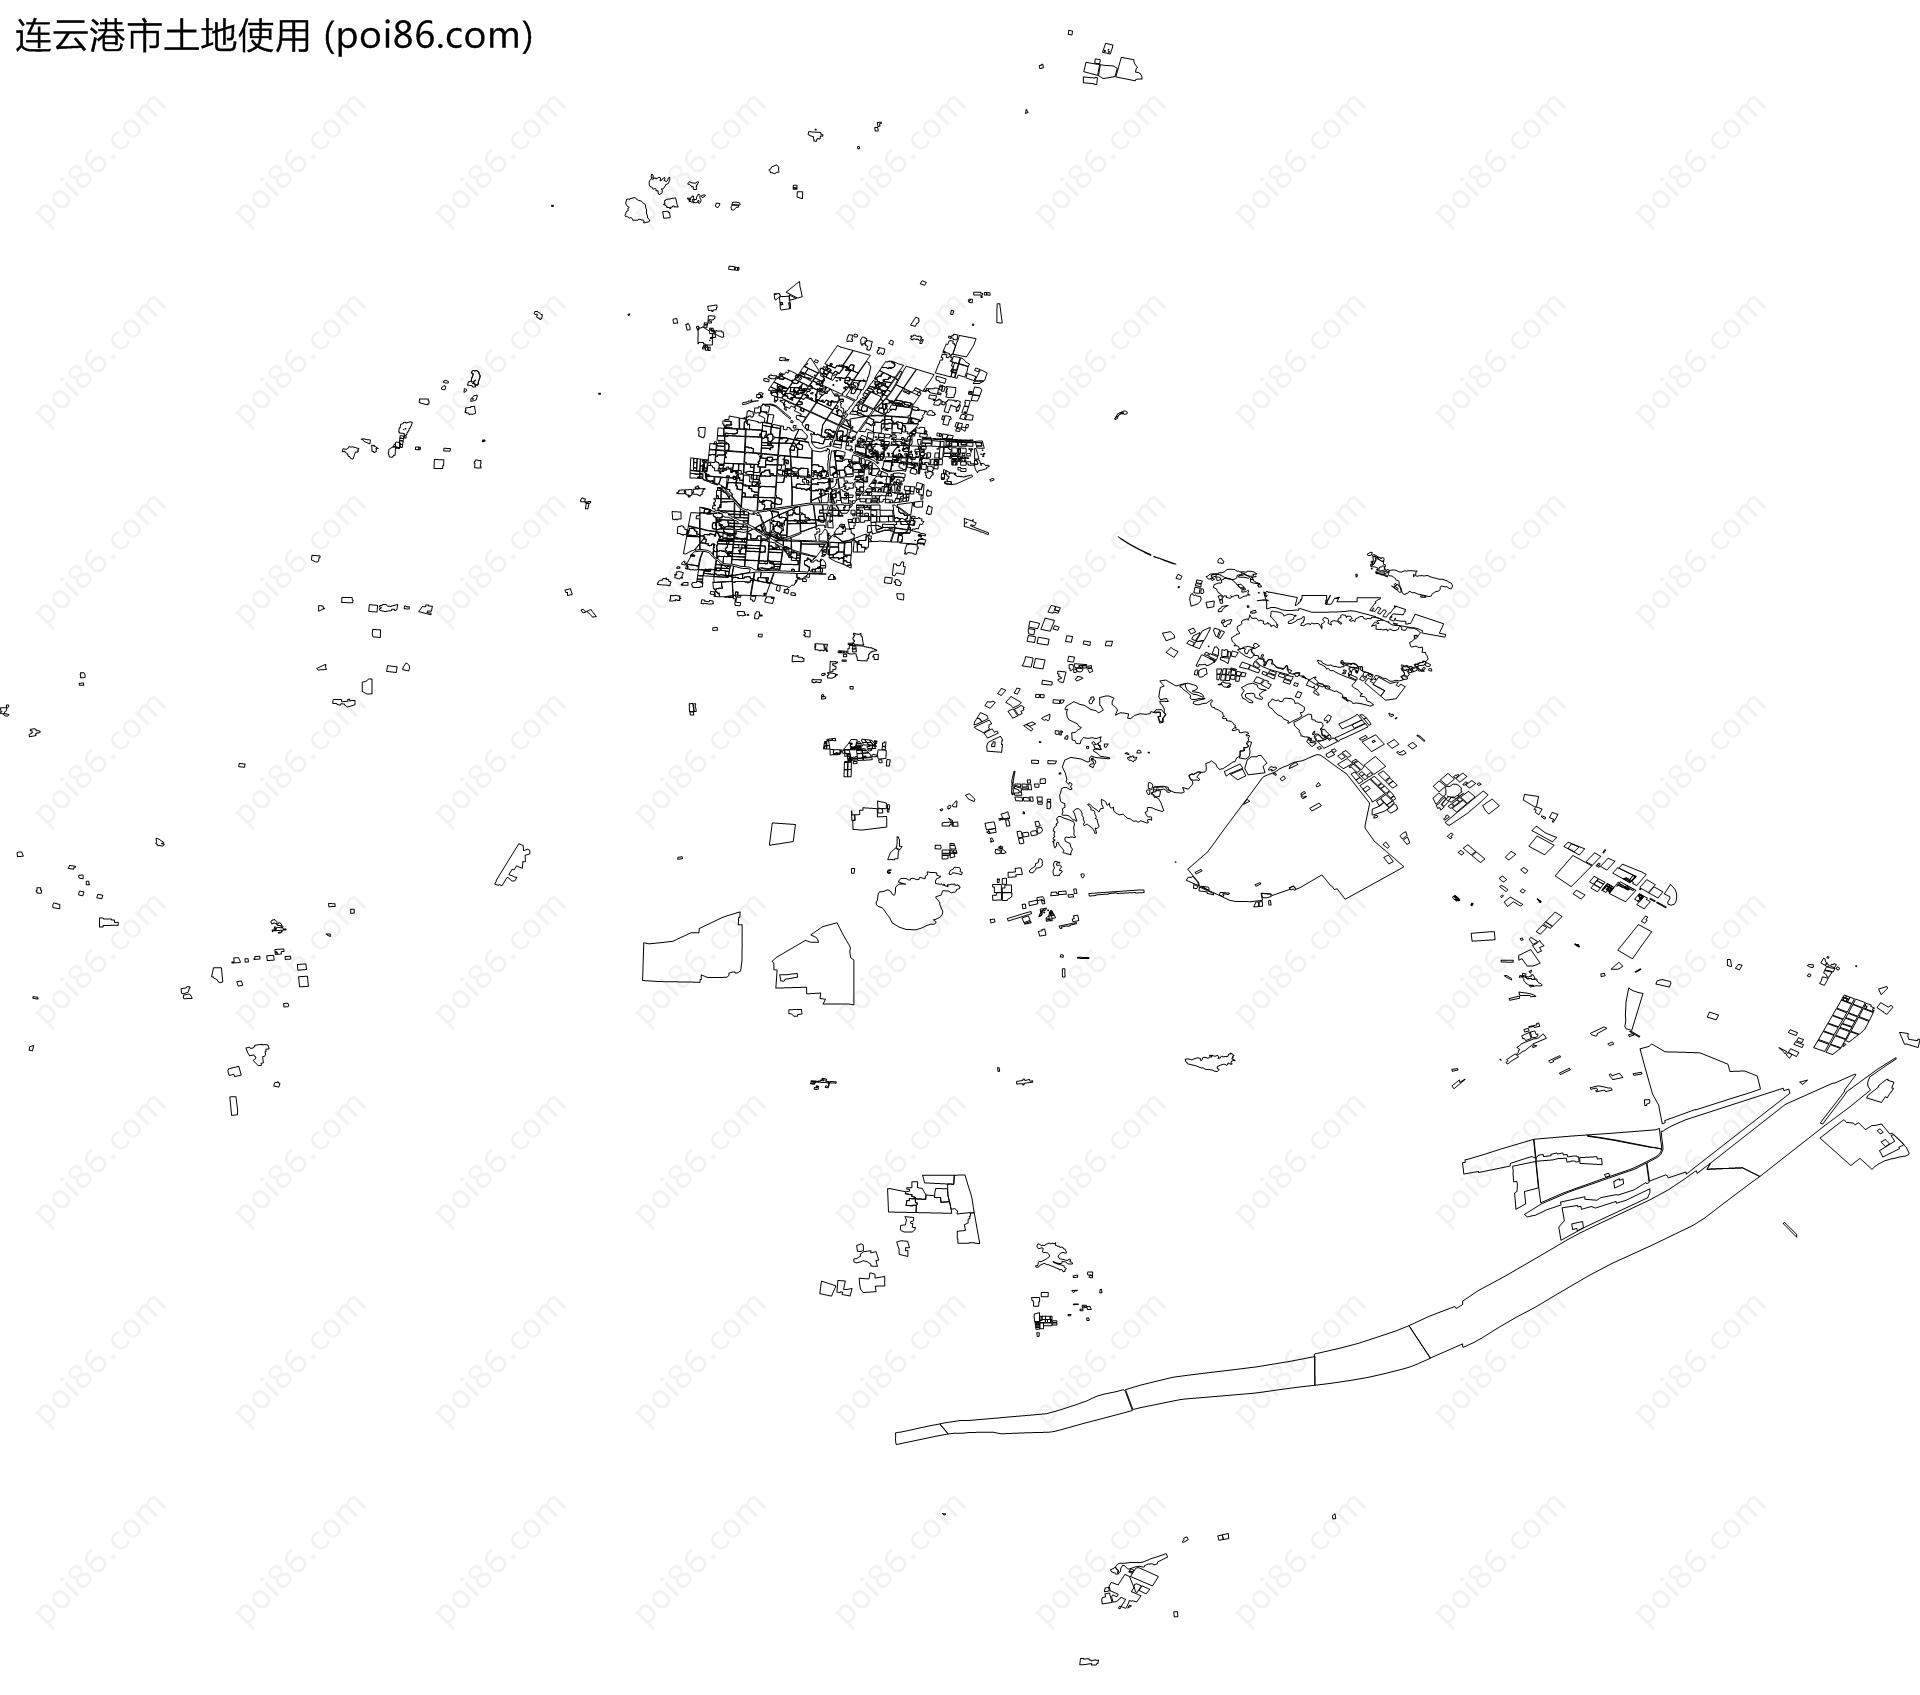 连云港市土地使用地图